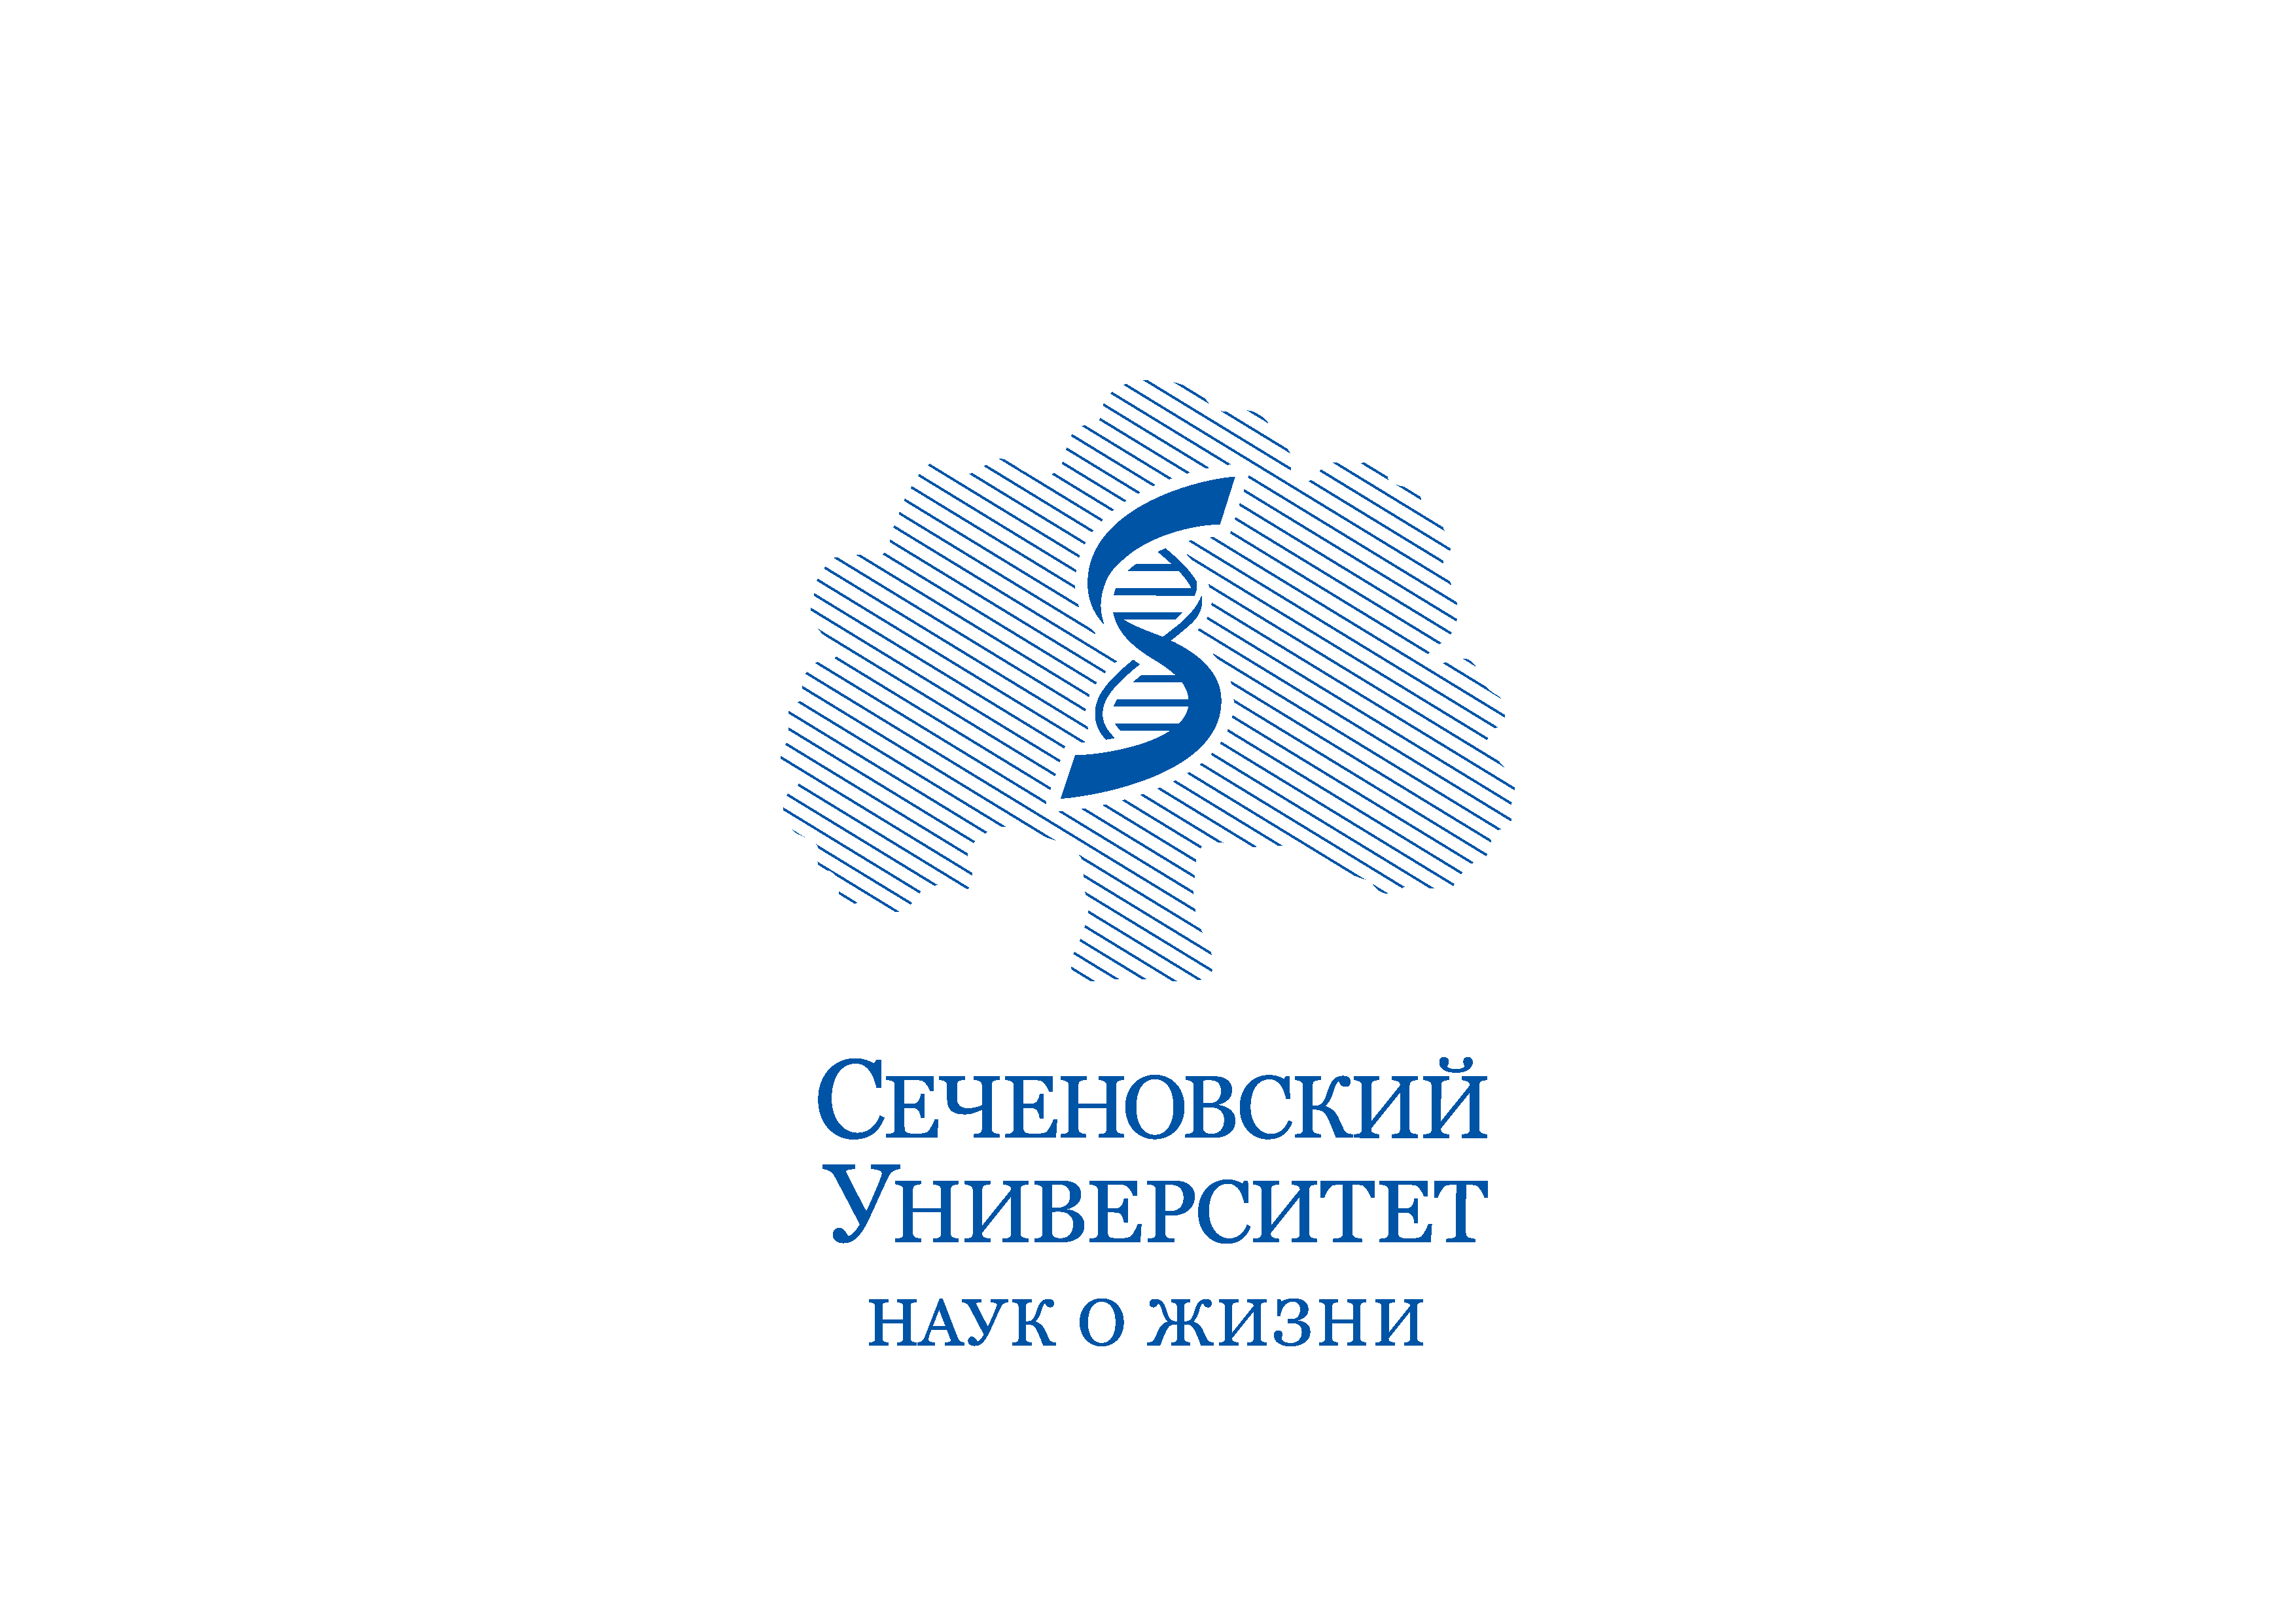 Сеченовский университет